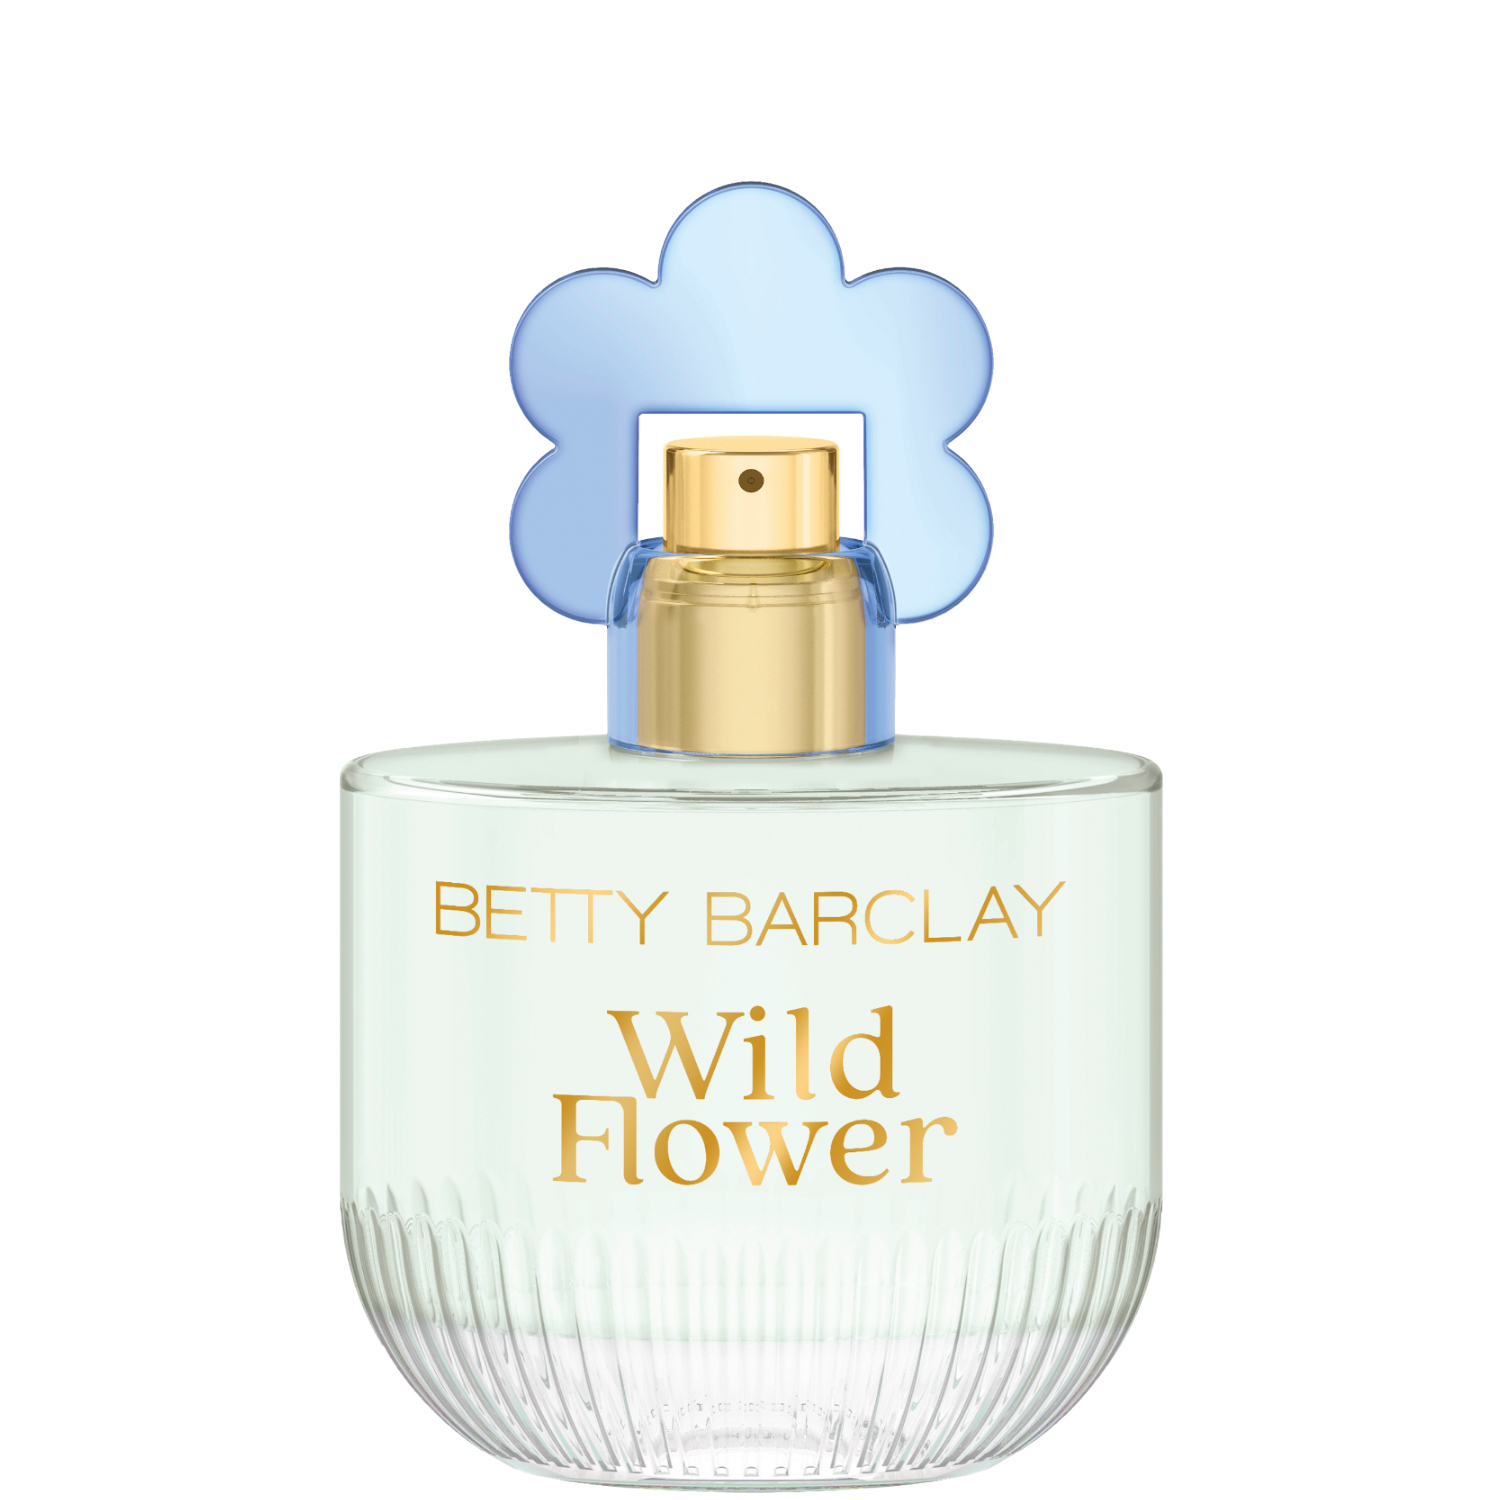 Betty Barclay Wild Flower Eau de Toilette 50ml